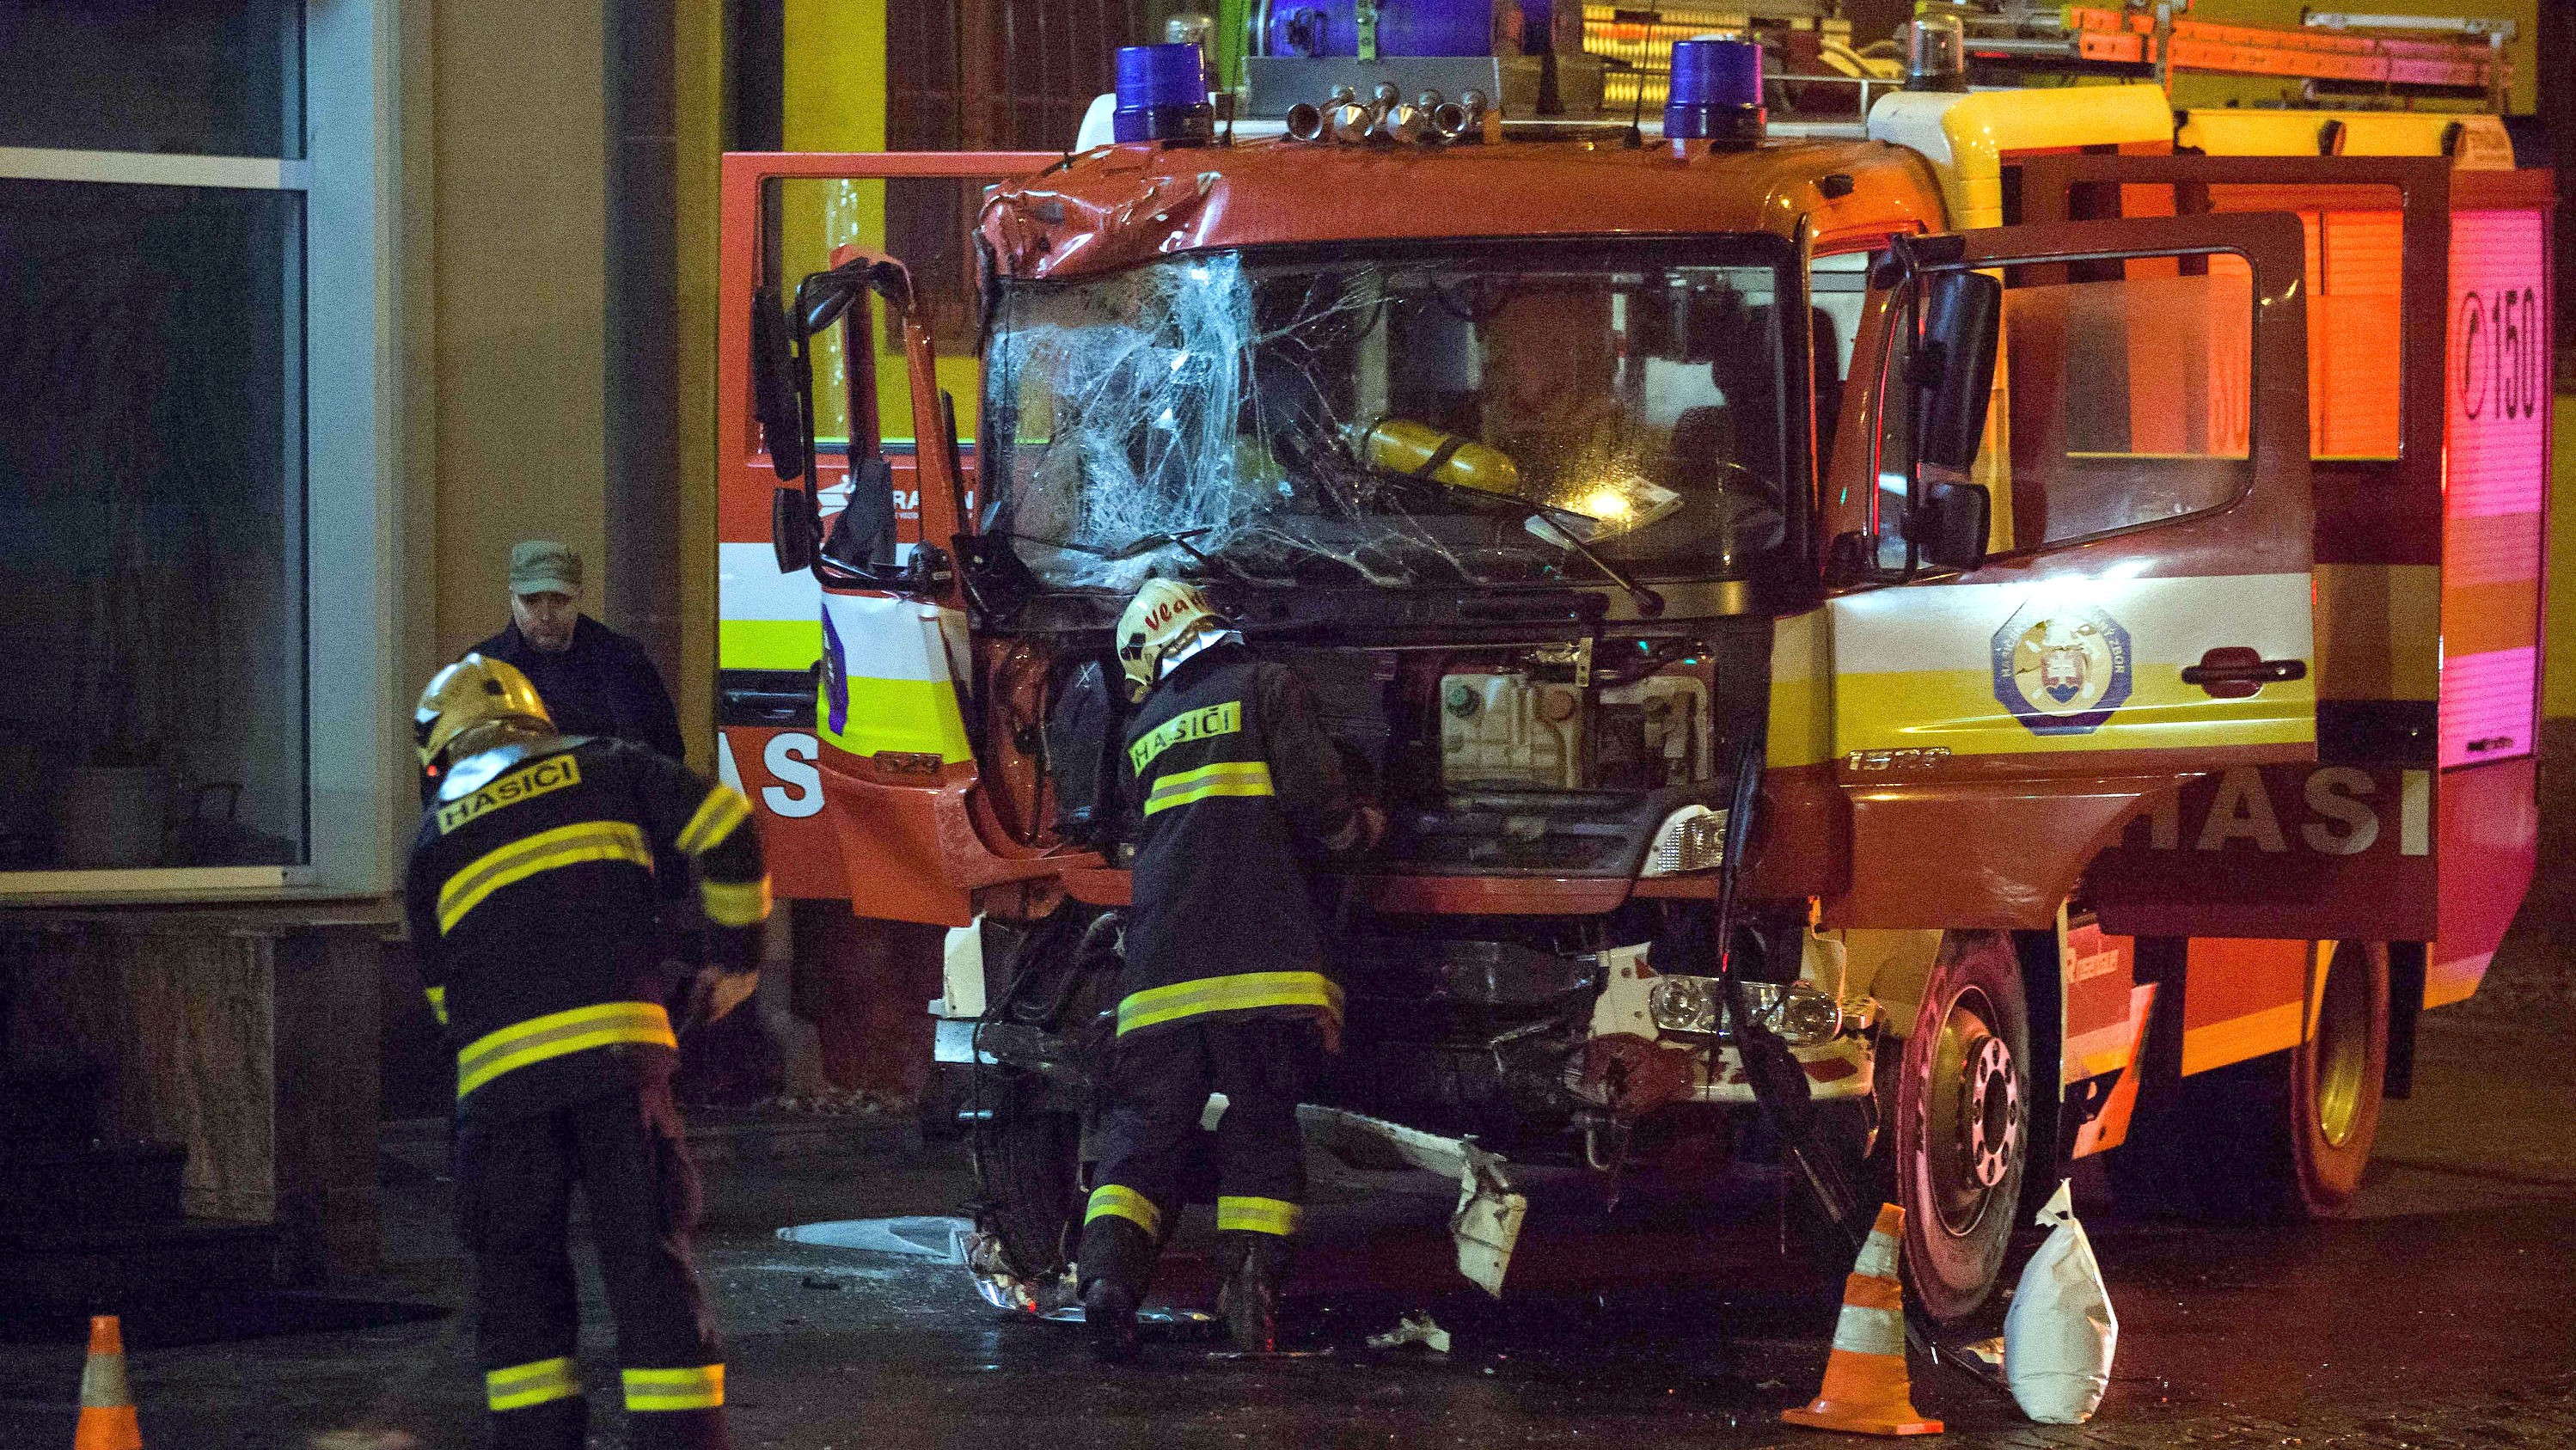 Hasiči z Bratislavy včera večer rozbili jedno zásahové vozidlo. V sychravom počasí havarovali na ceste k požiaru. Pri nehode sa zranilo päť ľudí, z nich boli traja hasiči.